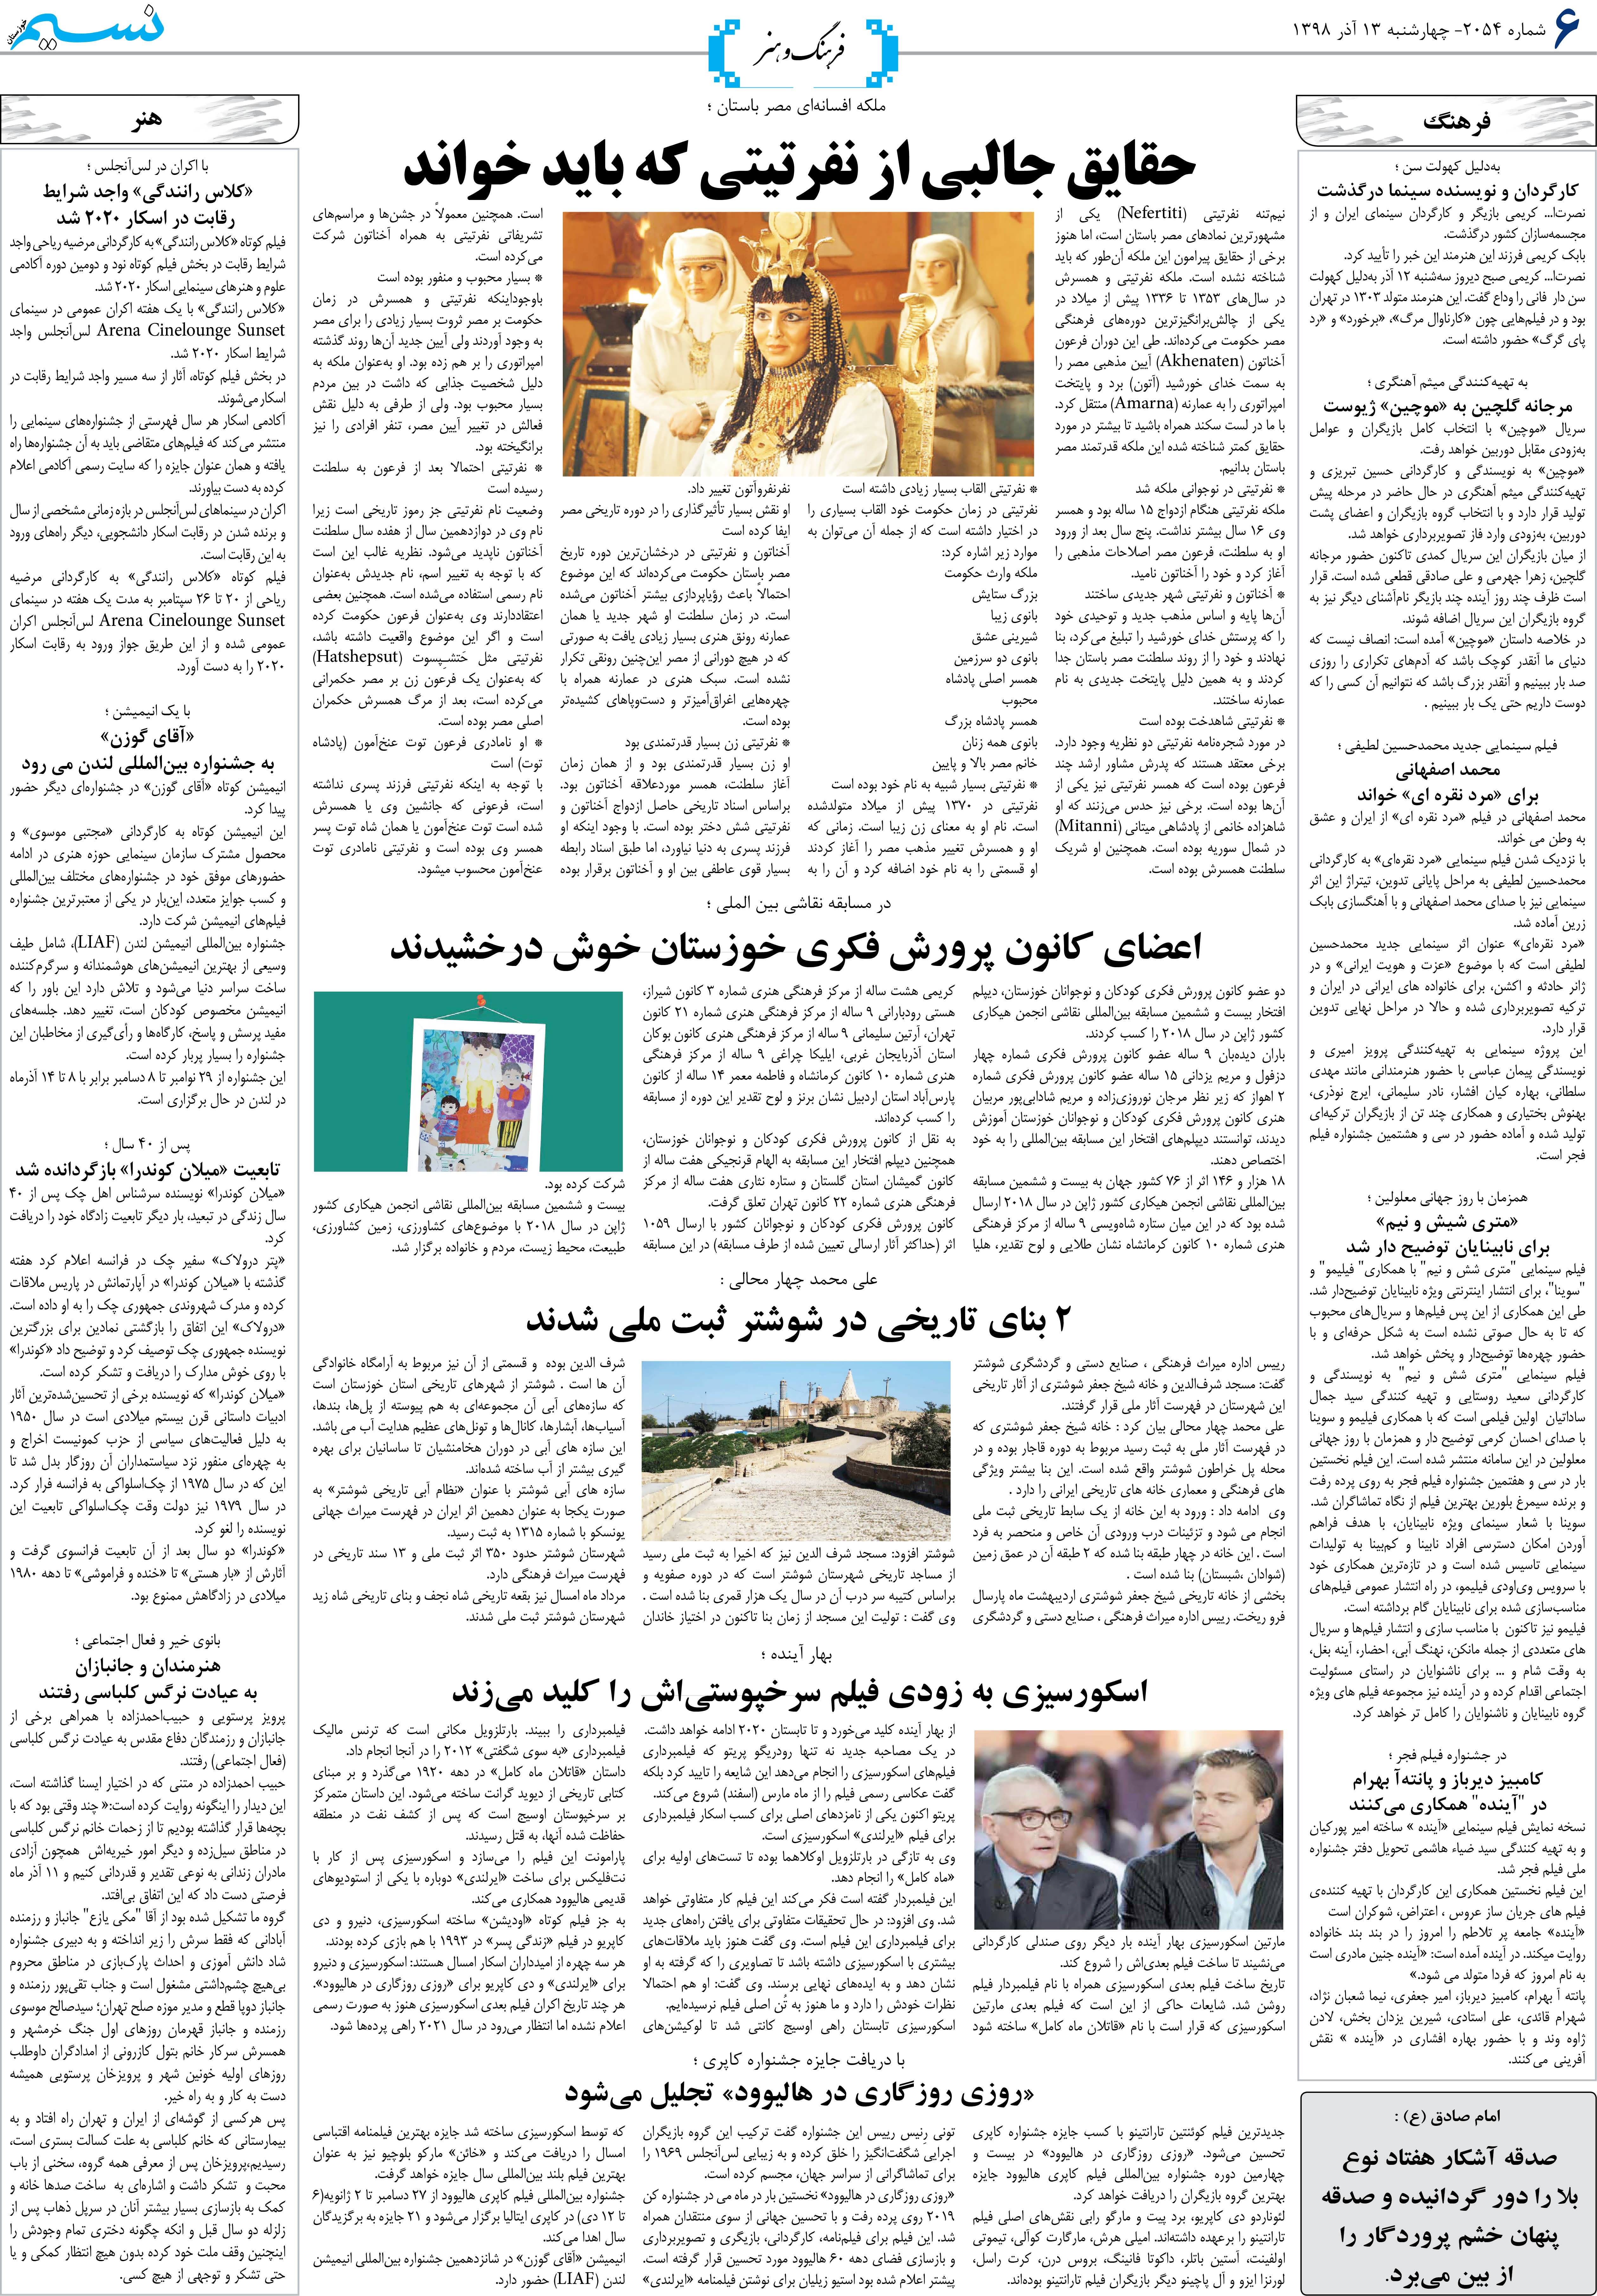 صفحه فرهنگ و هنر روزنامه نسیم شماره 2054